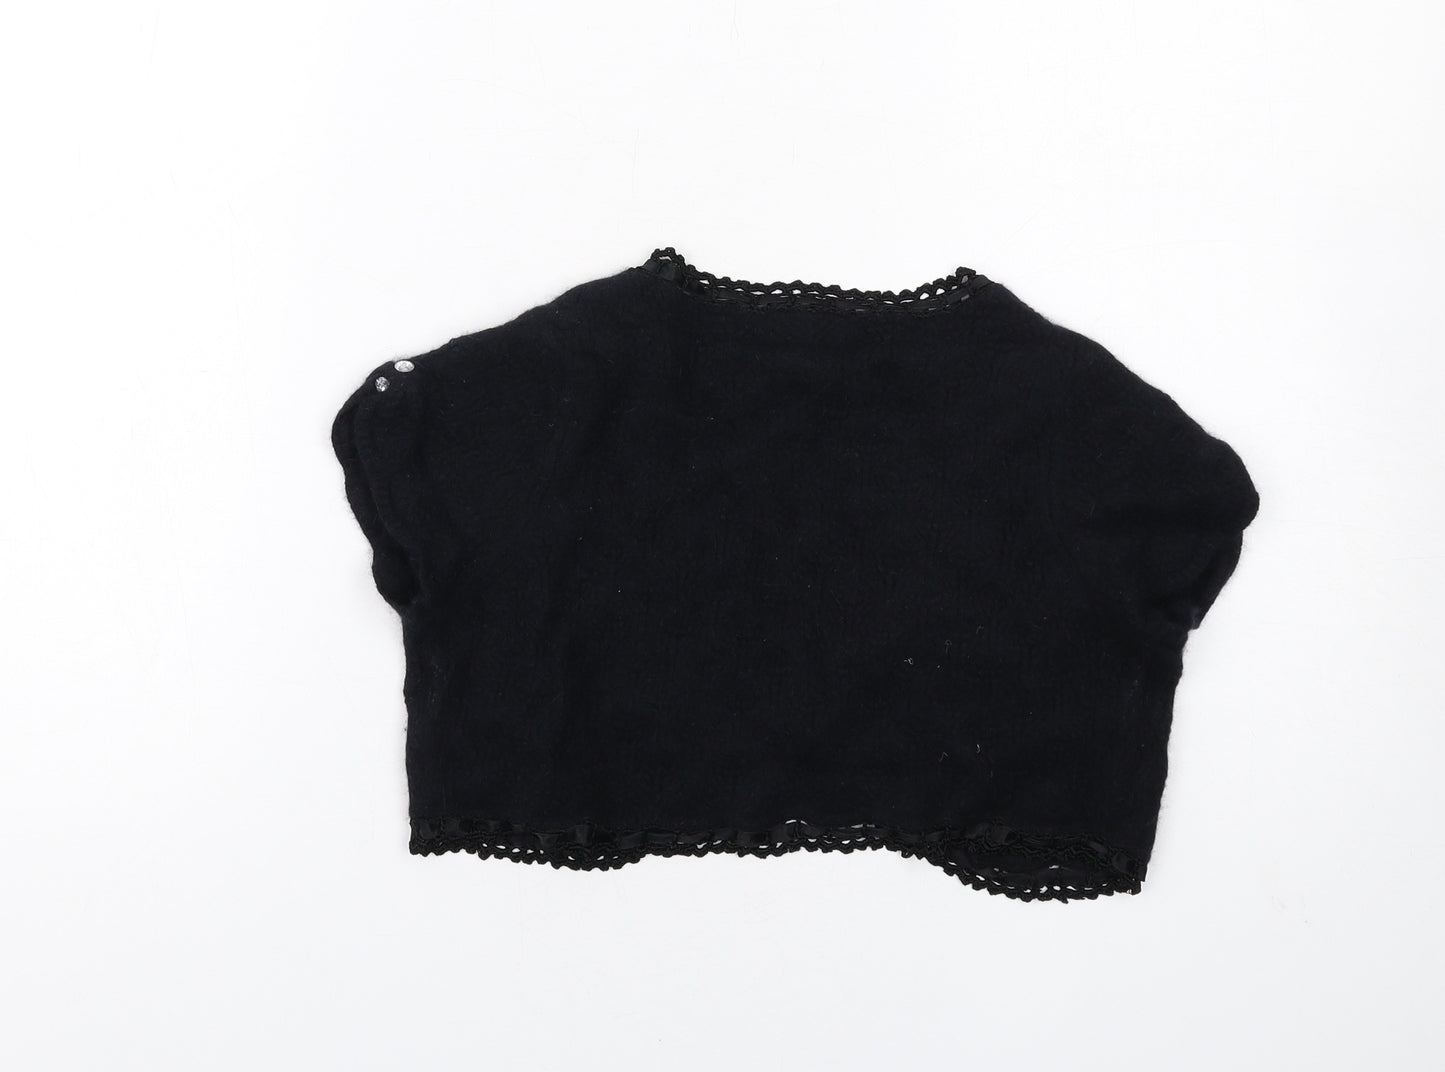 Karen Millen Womens Black V-Neck Wool Shrug Jumper Size S - Crochet Trim